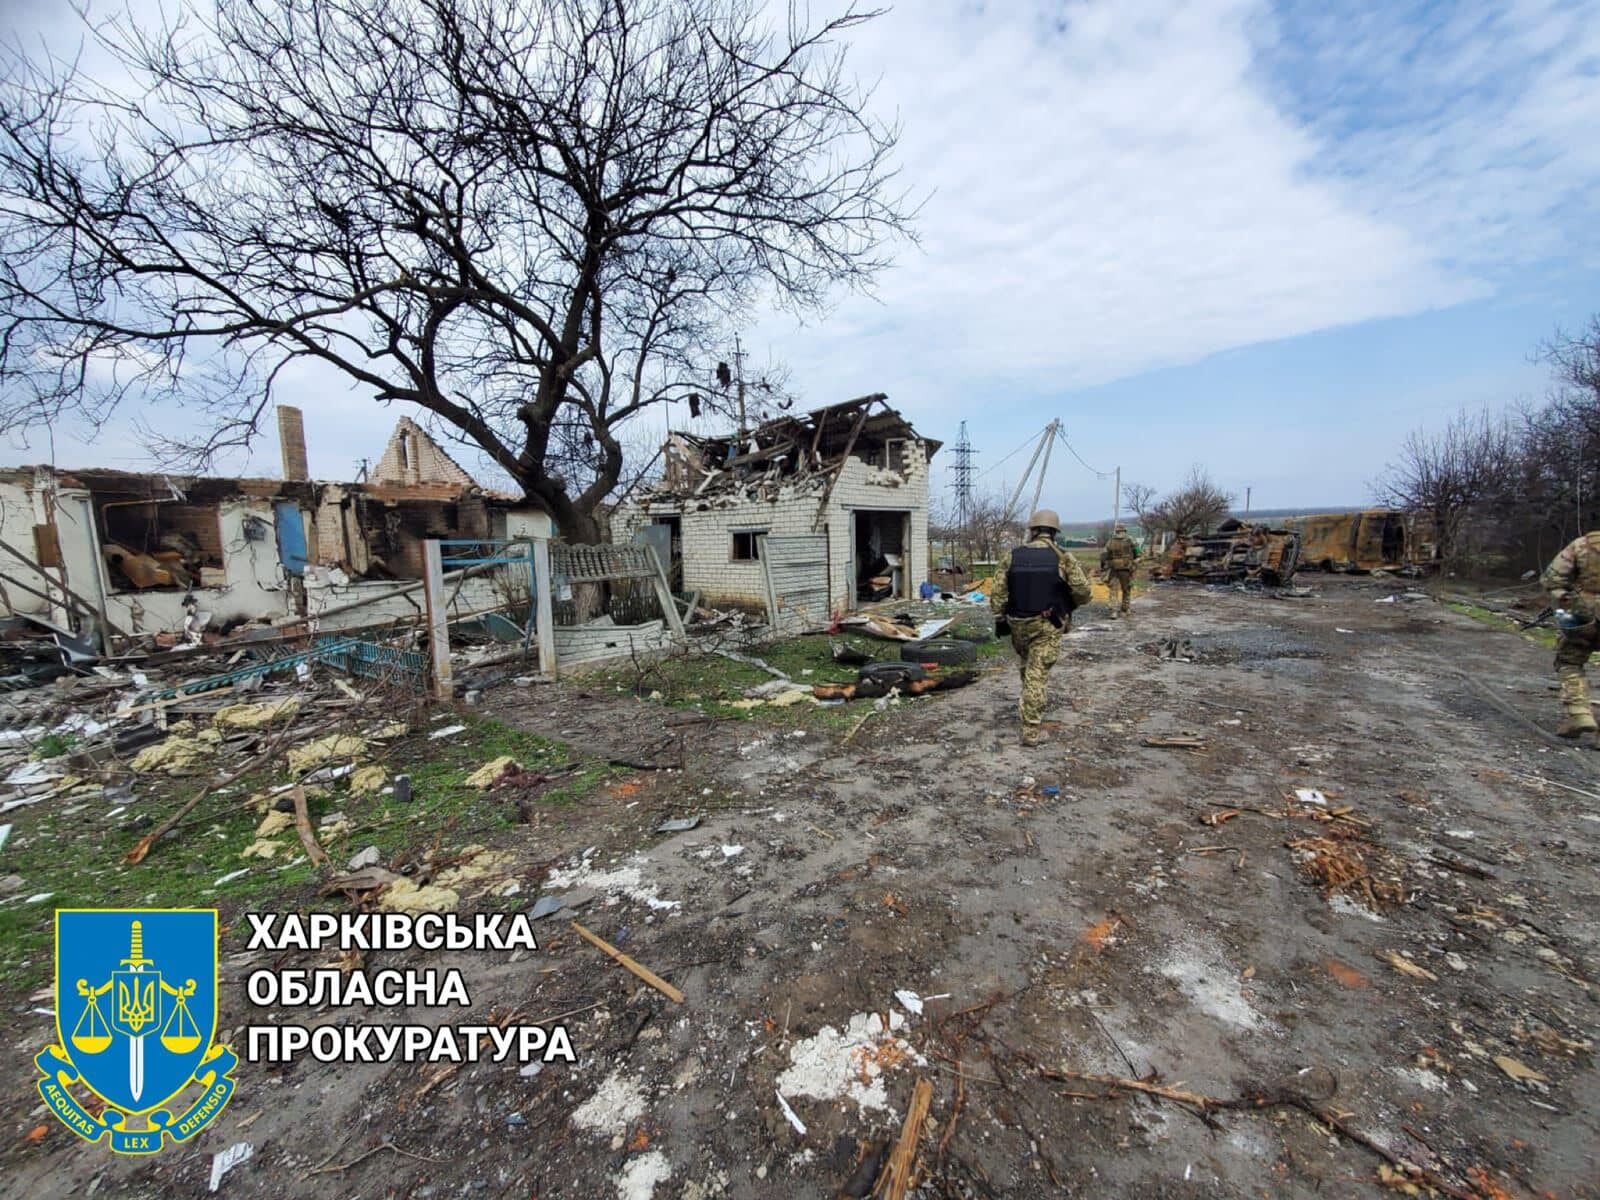 В селе разрушены жилые дома и инфраструктура